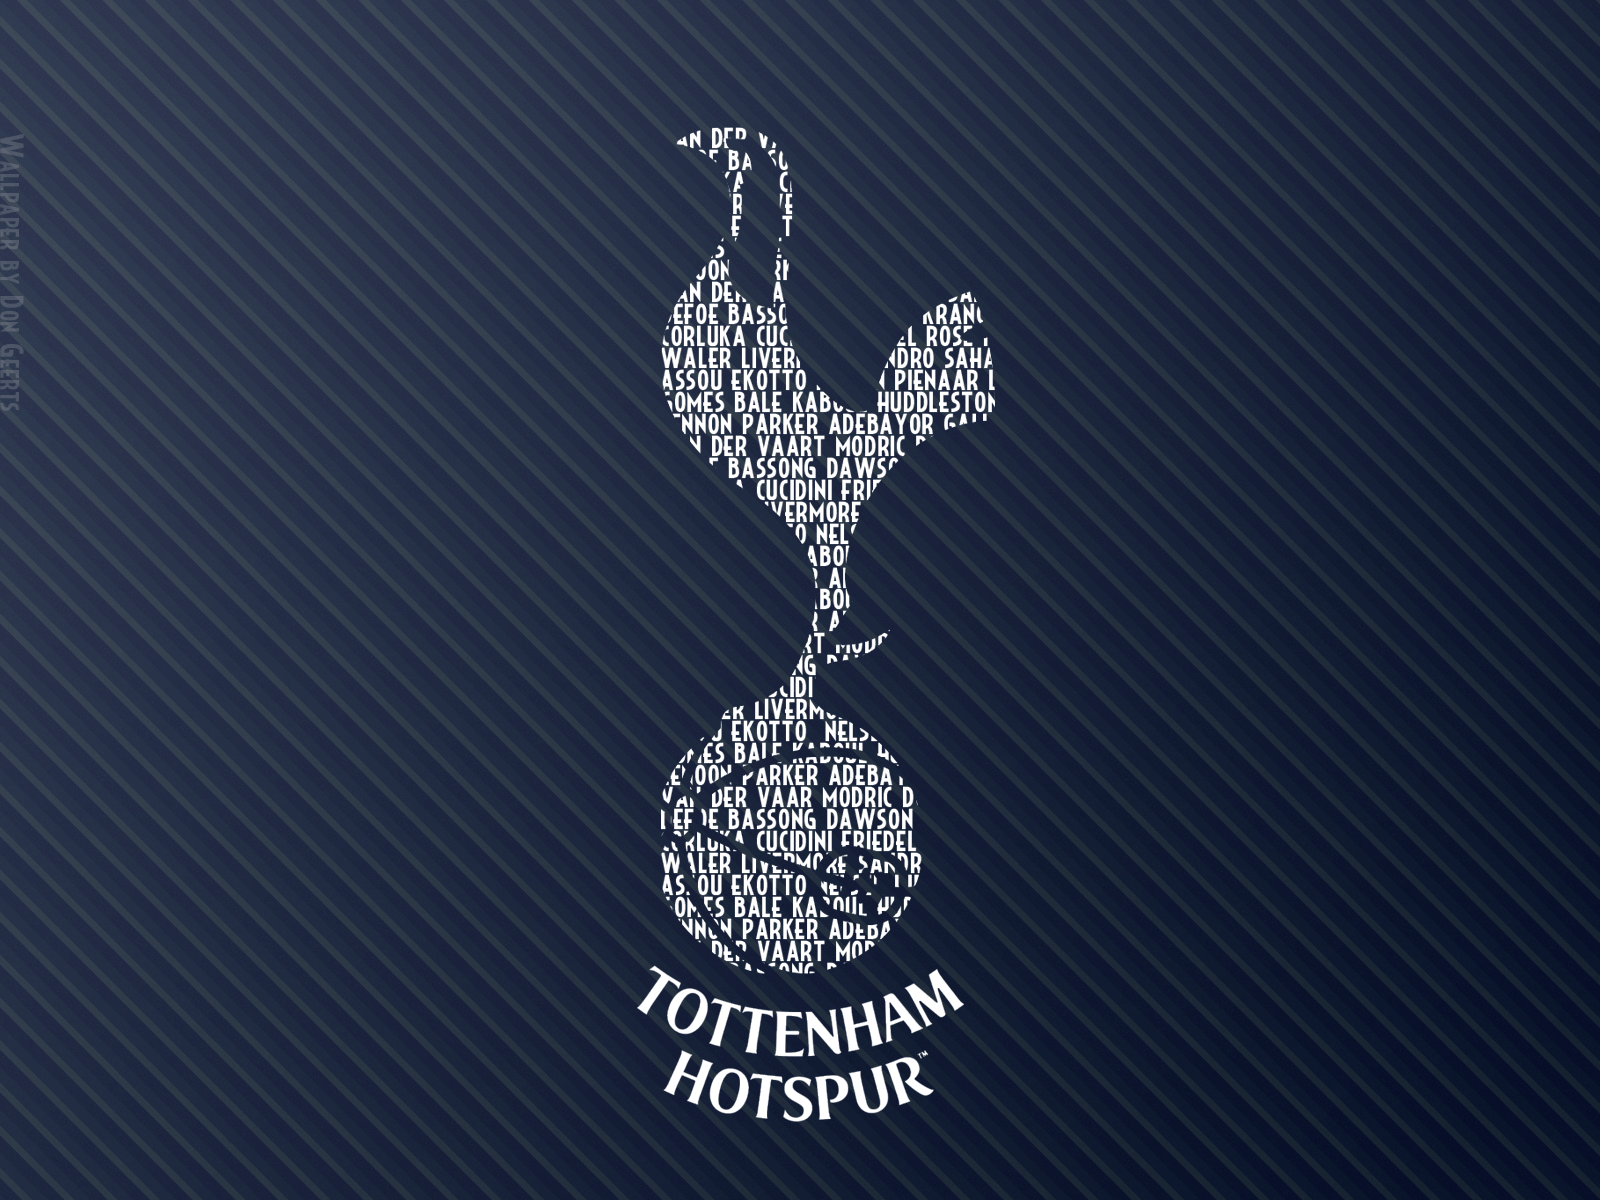 Tottenham Hotspur Football Wallpaper